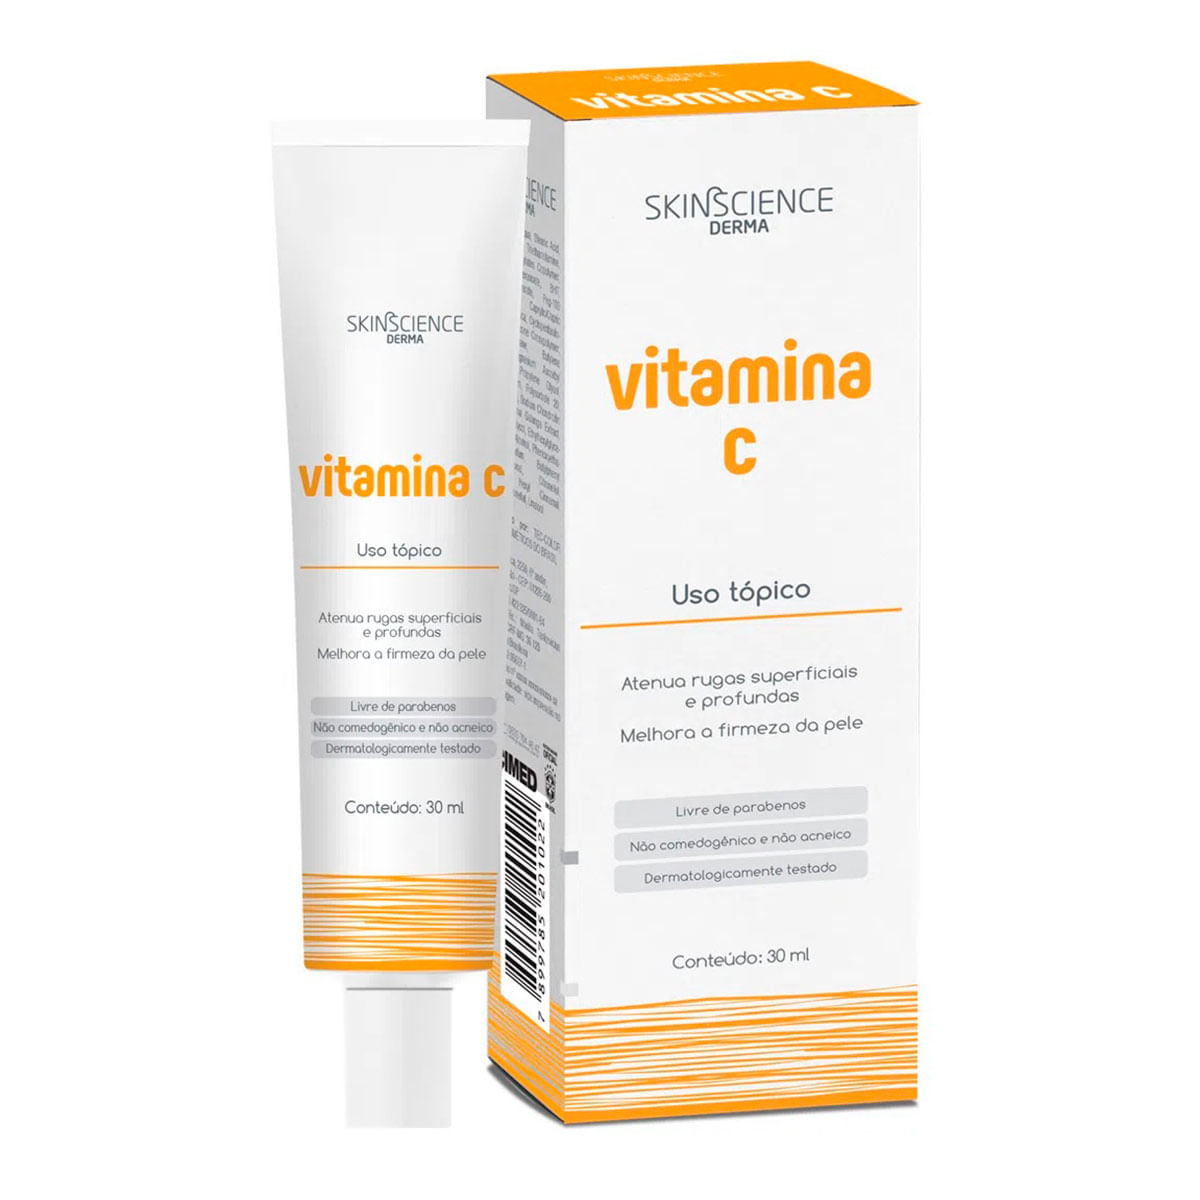 Vitamina C Creme Anti-Idade com Tecnologia de Encapsulamento 30ml Skincience Derma Cimed